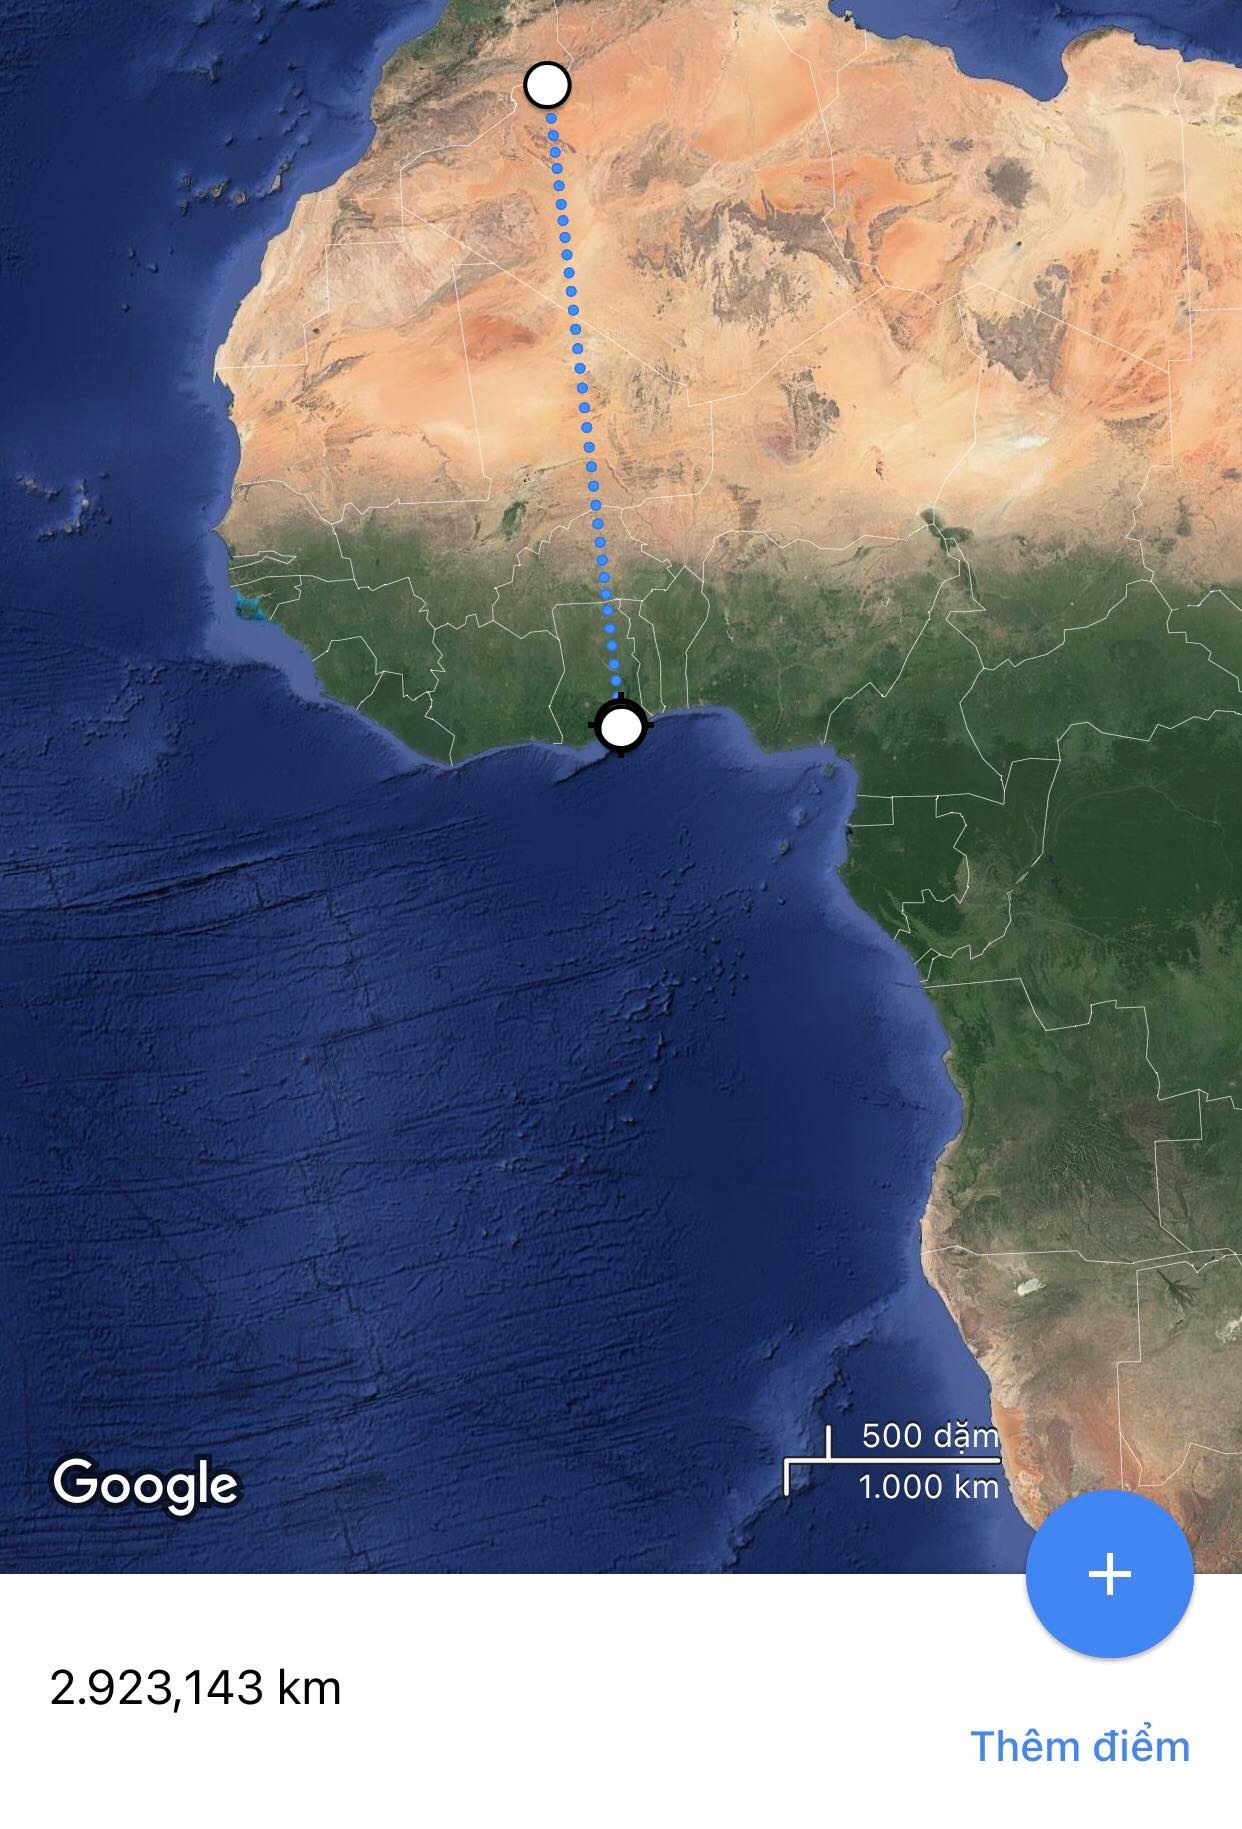 Đến Ghana thi đấu, đội bóng Algeria phải bay 5 chuyến (20 giờ đồng hồ) trong 2 ngày - Ảnh 1.